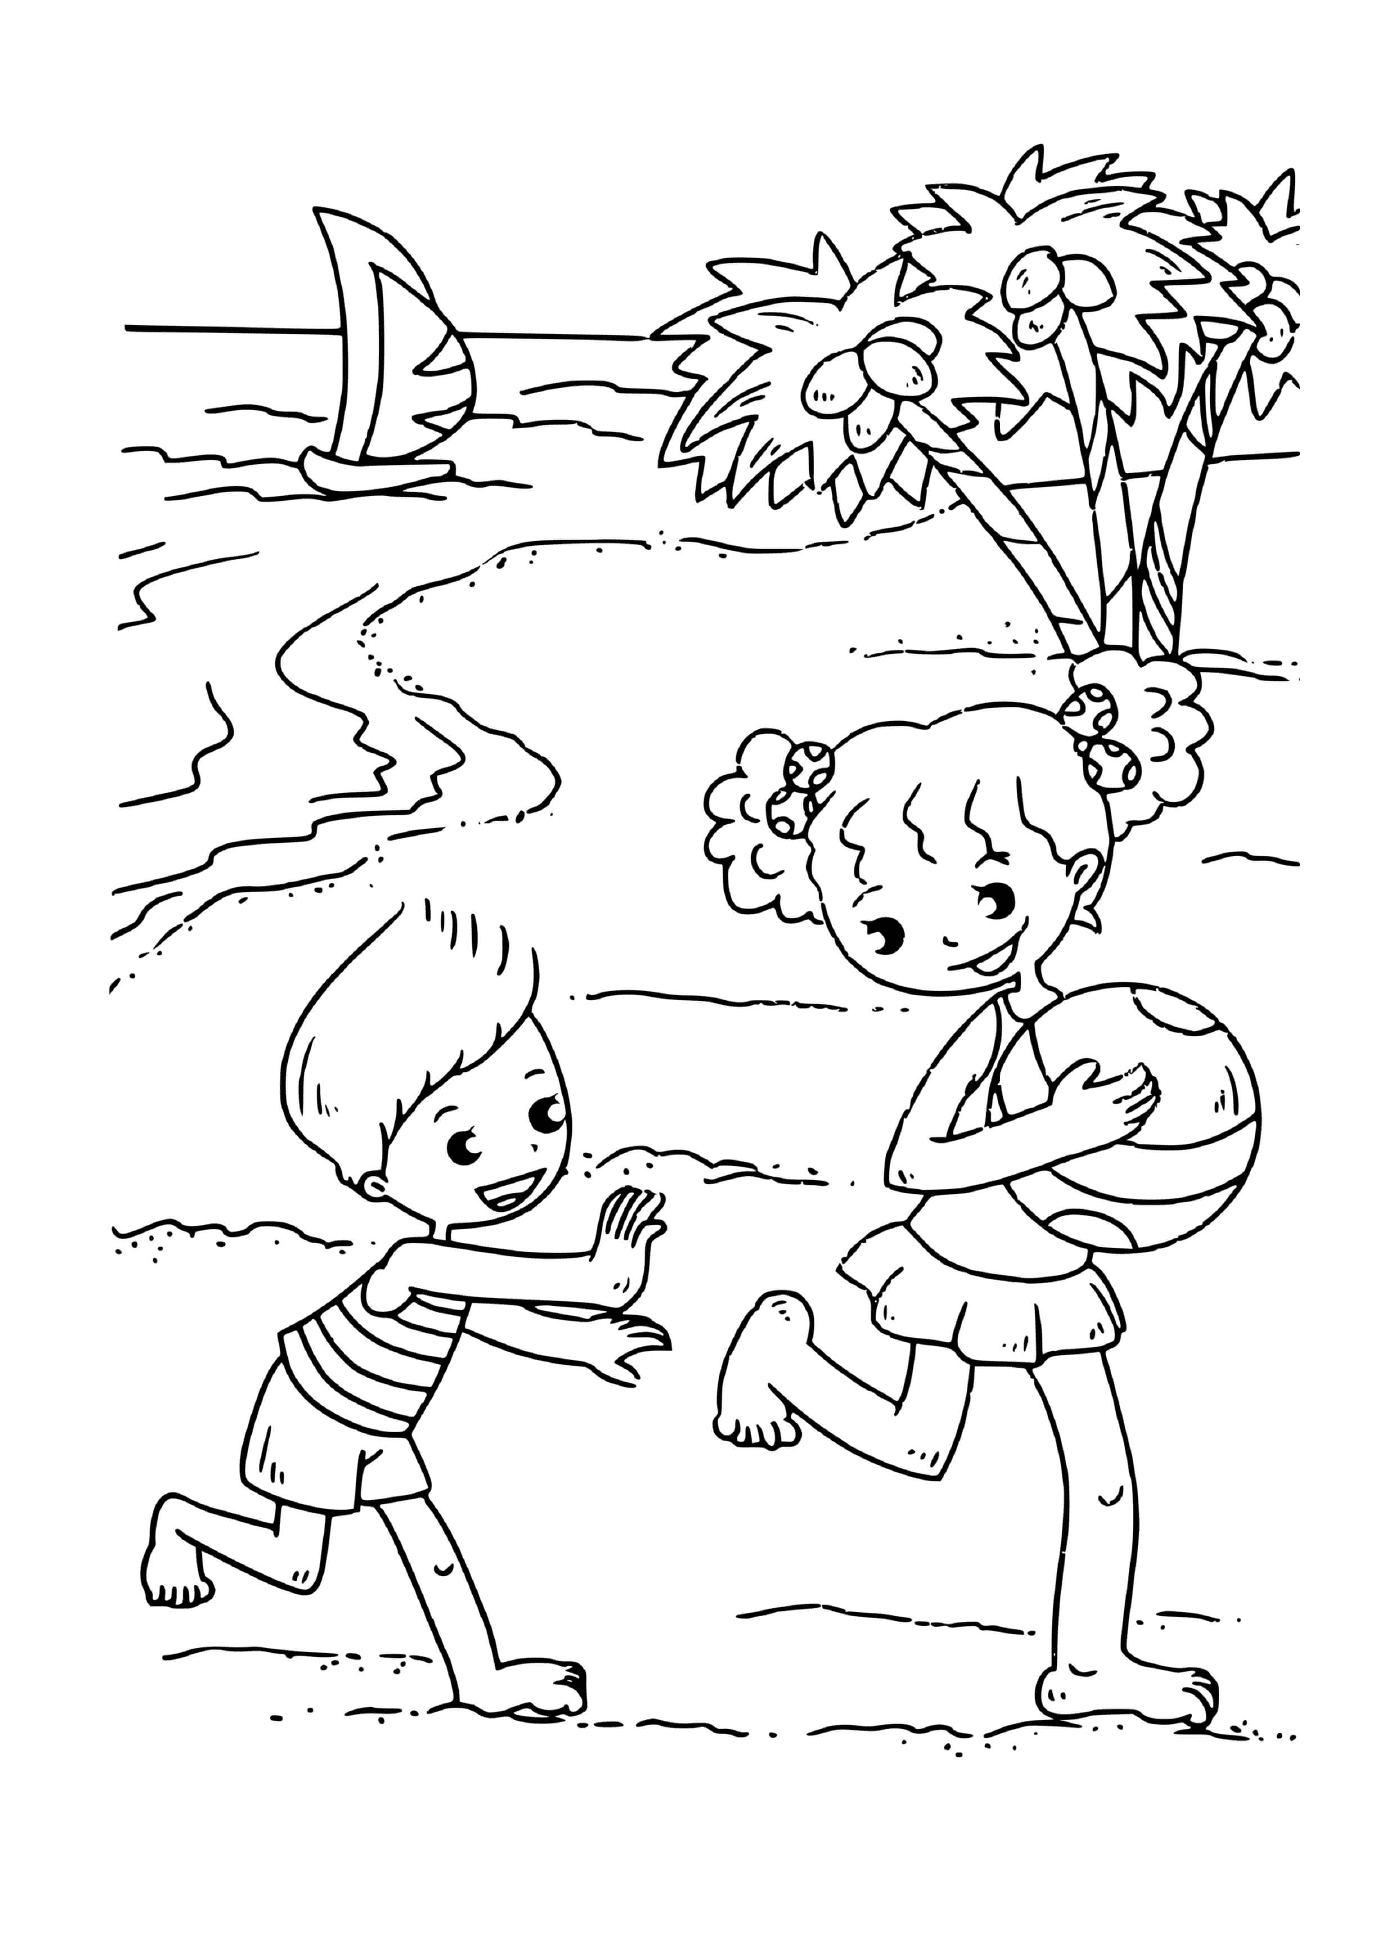   Enfants jouant au frisbee 